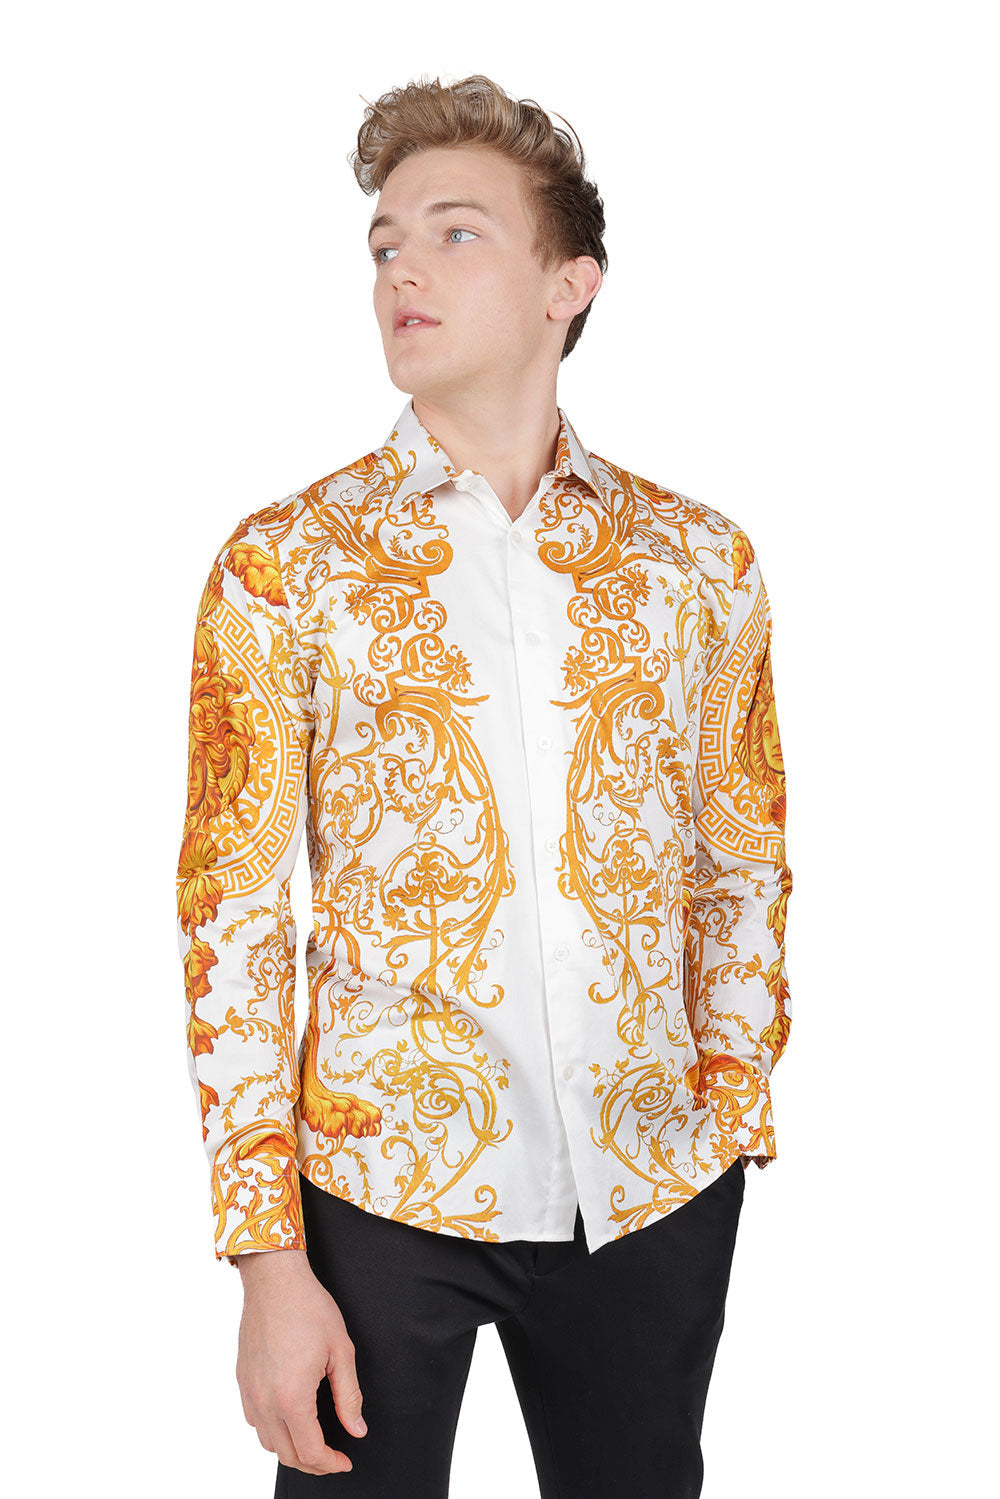 BARABAS Men Medusa Floral Print Design Button Down Luxury Shirt SPR265 White